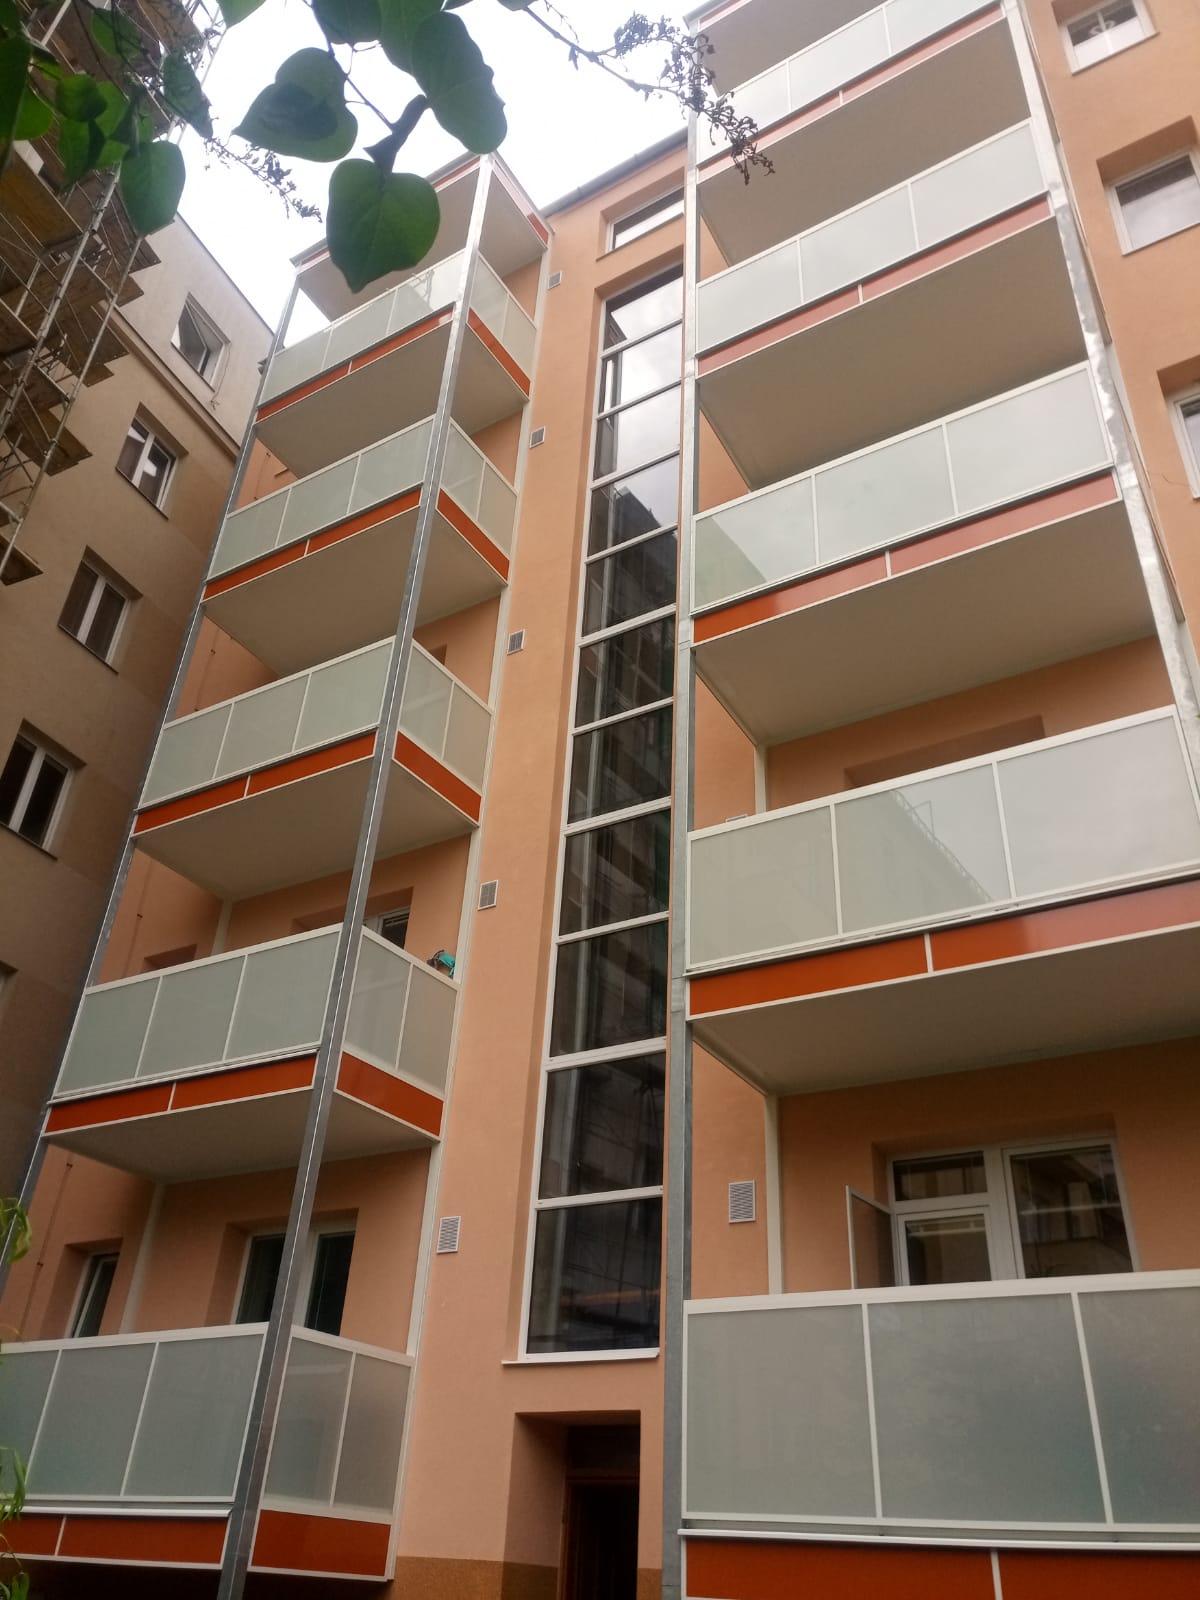 Nová fasáda a balkony bytového domu 